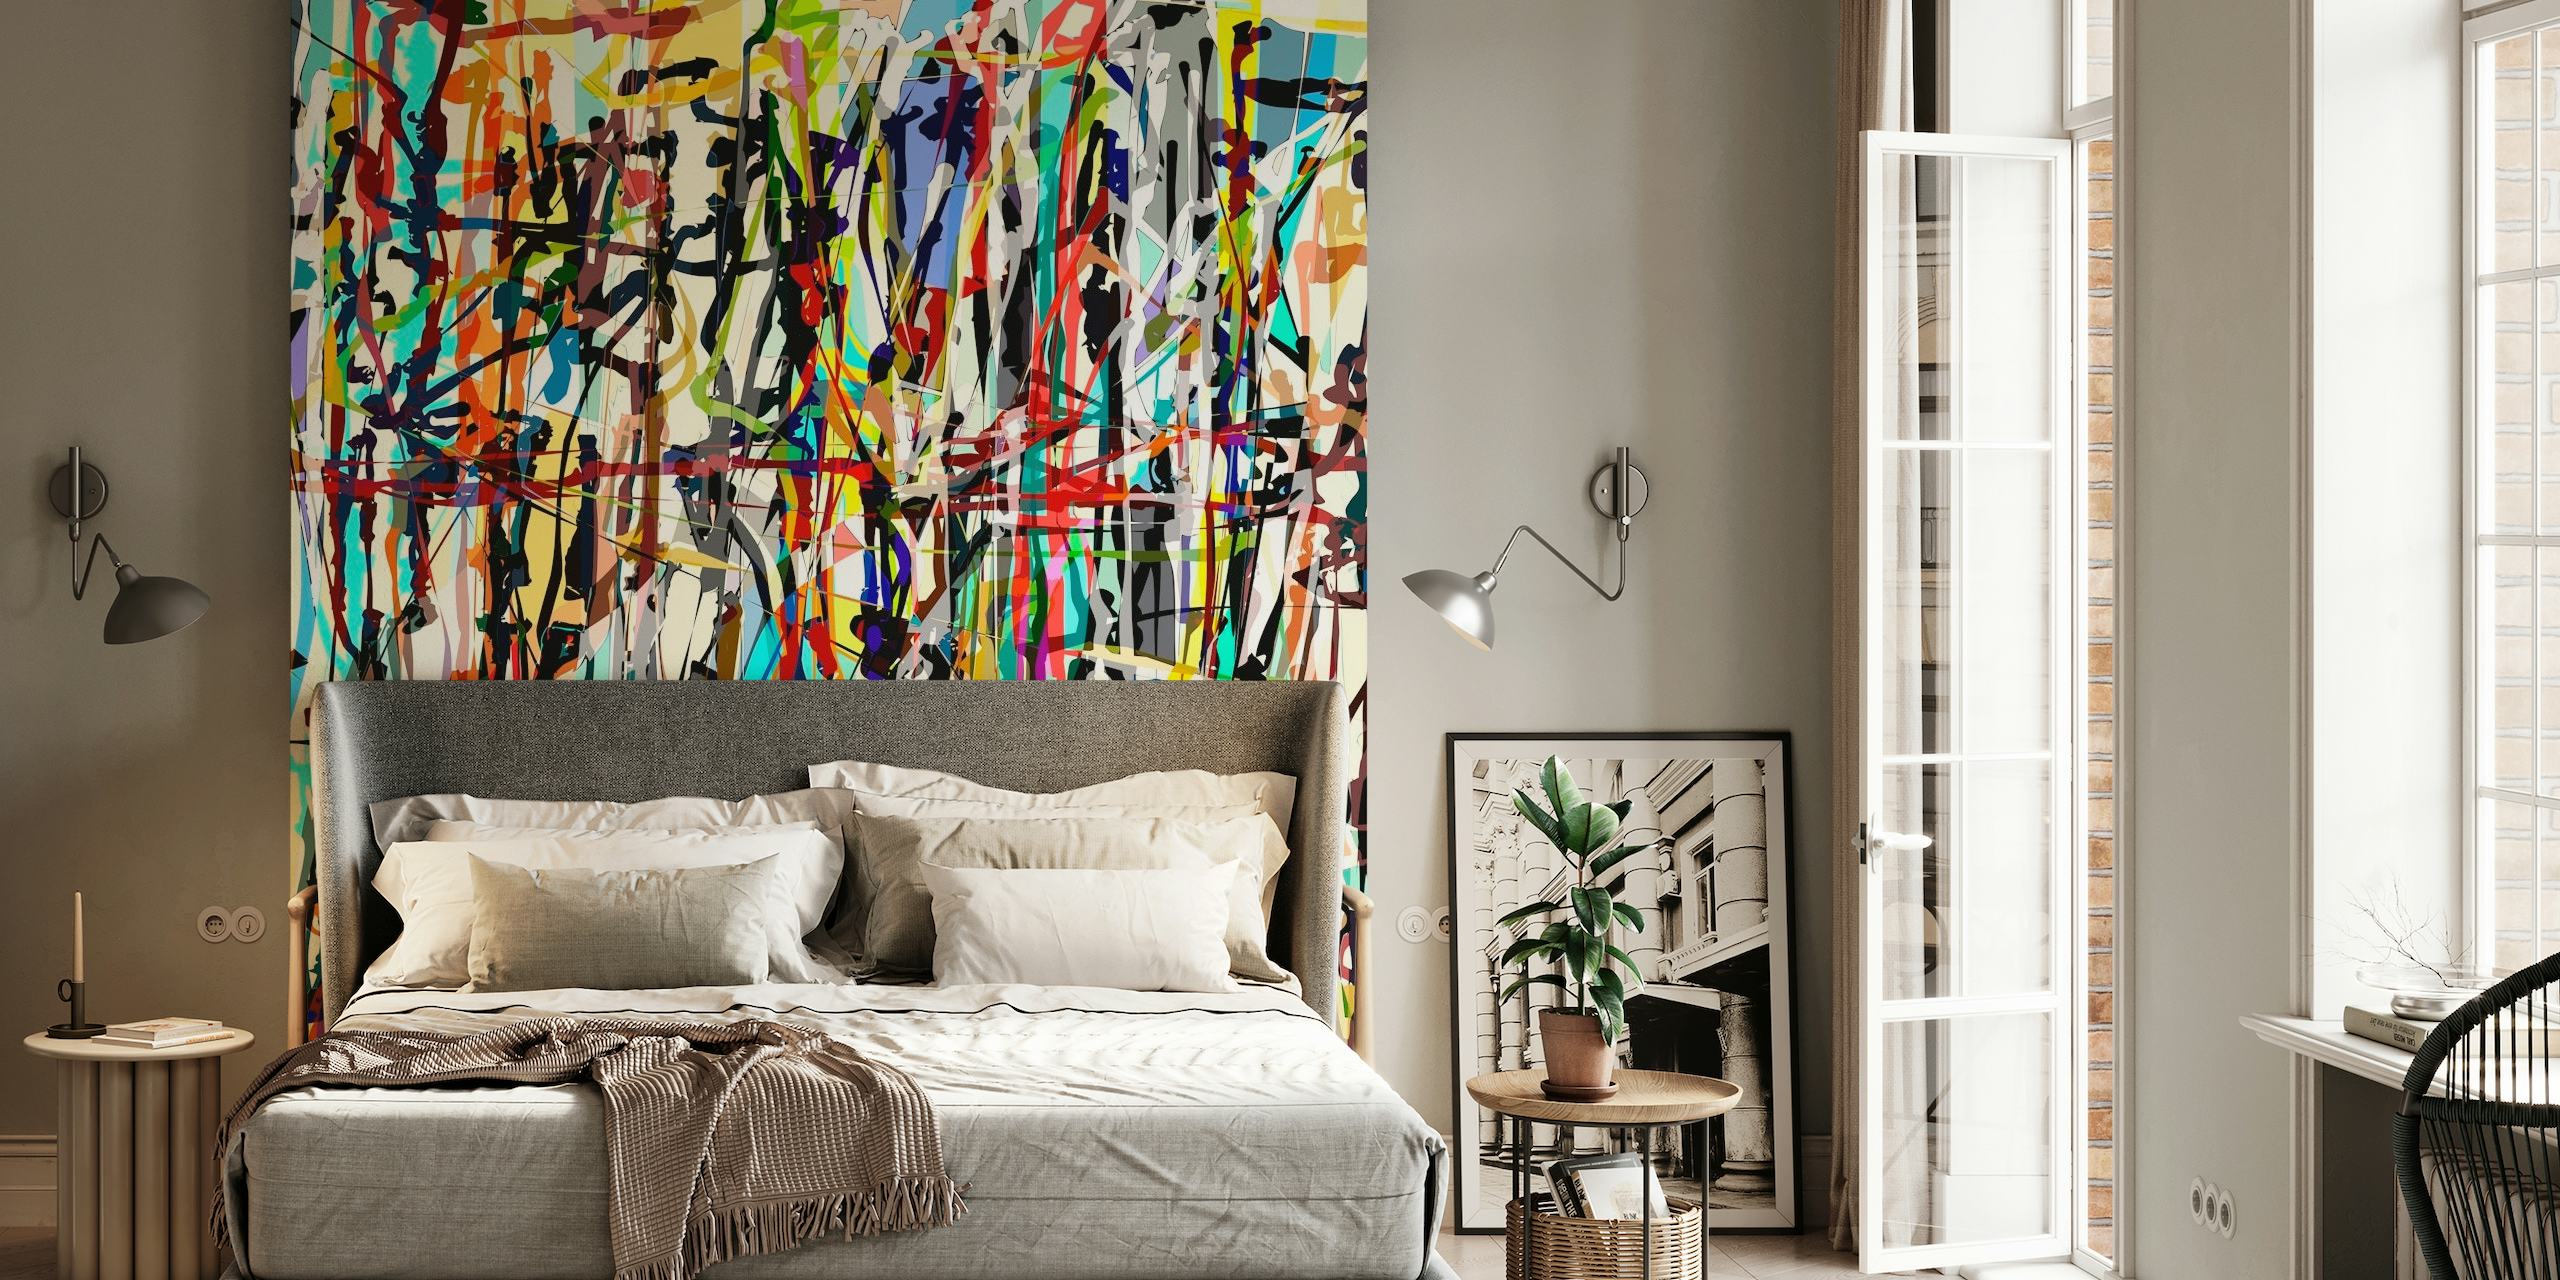 Abstrakt Pollock-inspireret vægmaleri med en farverig blanding af livlige stænk og penselstrøg.